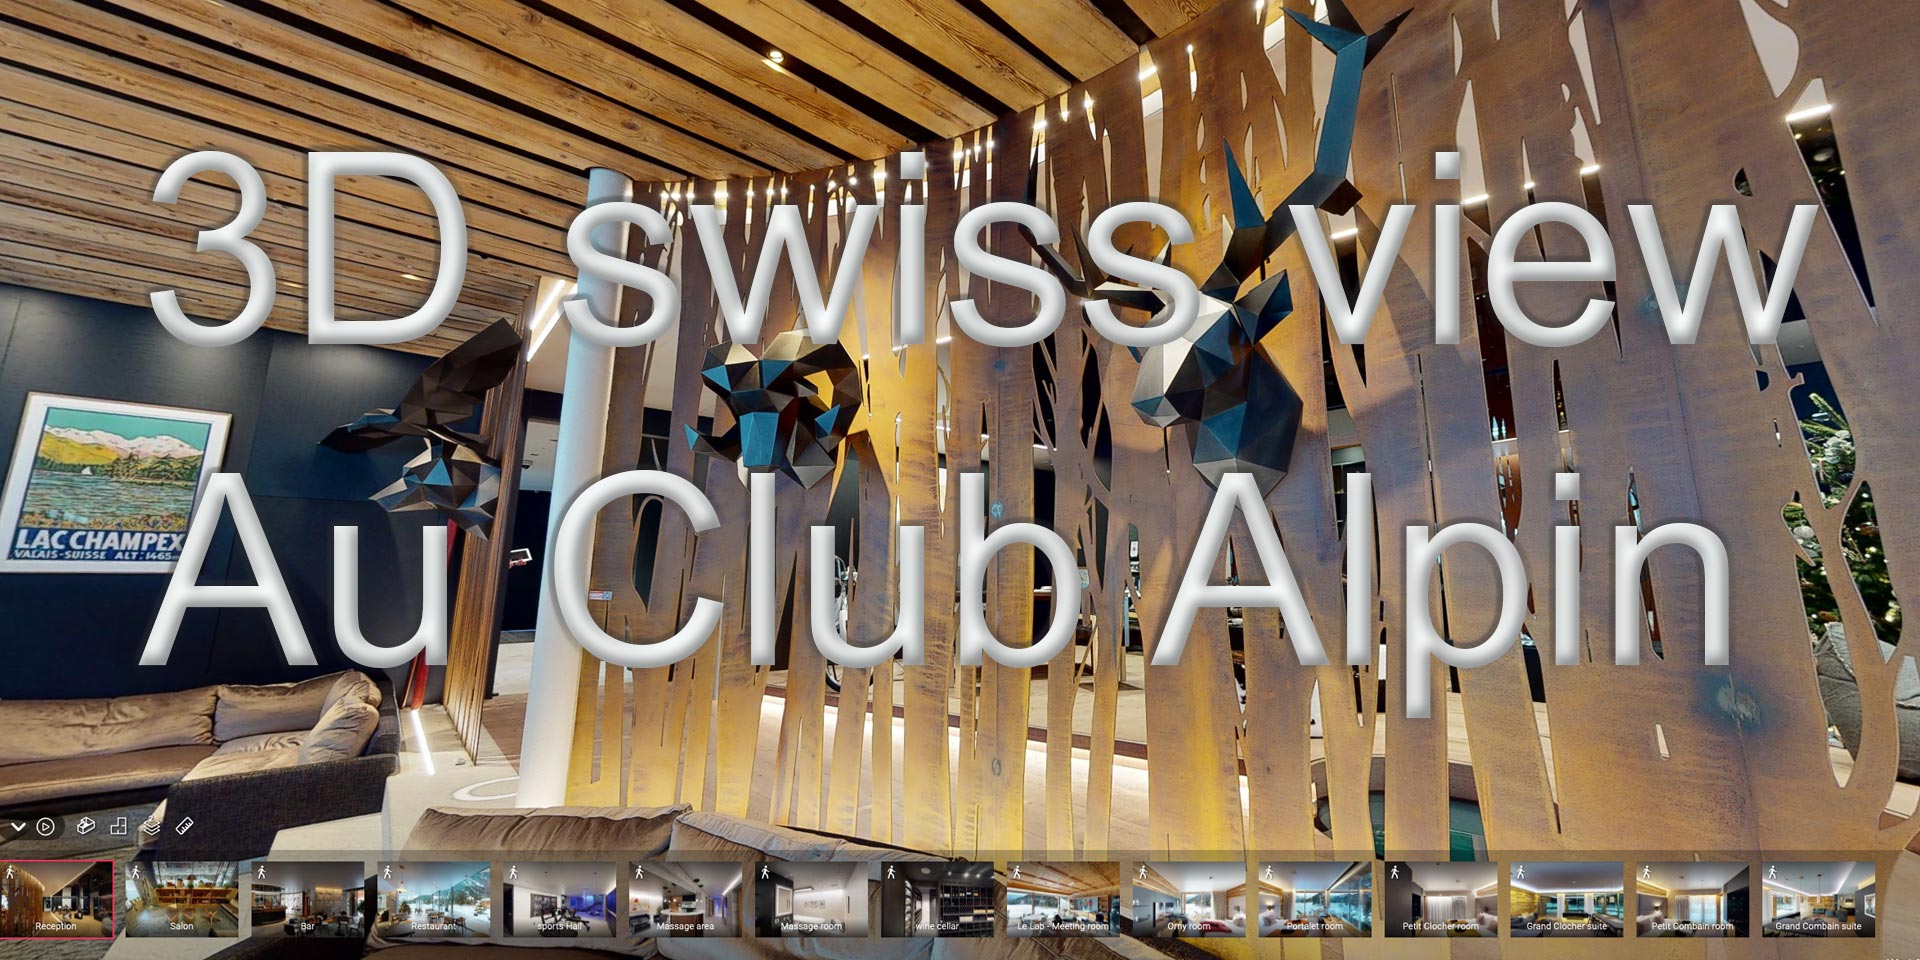 3Dswissview-au-club-alpin-mea